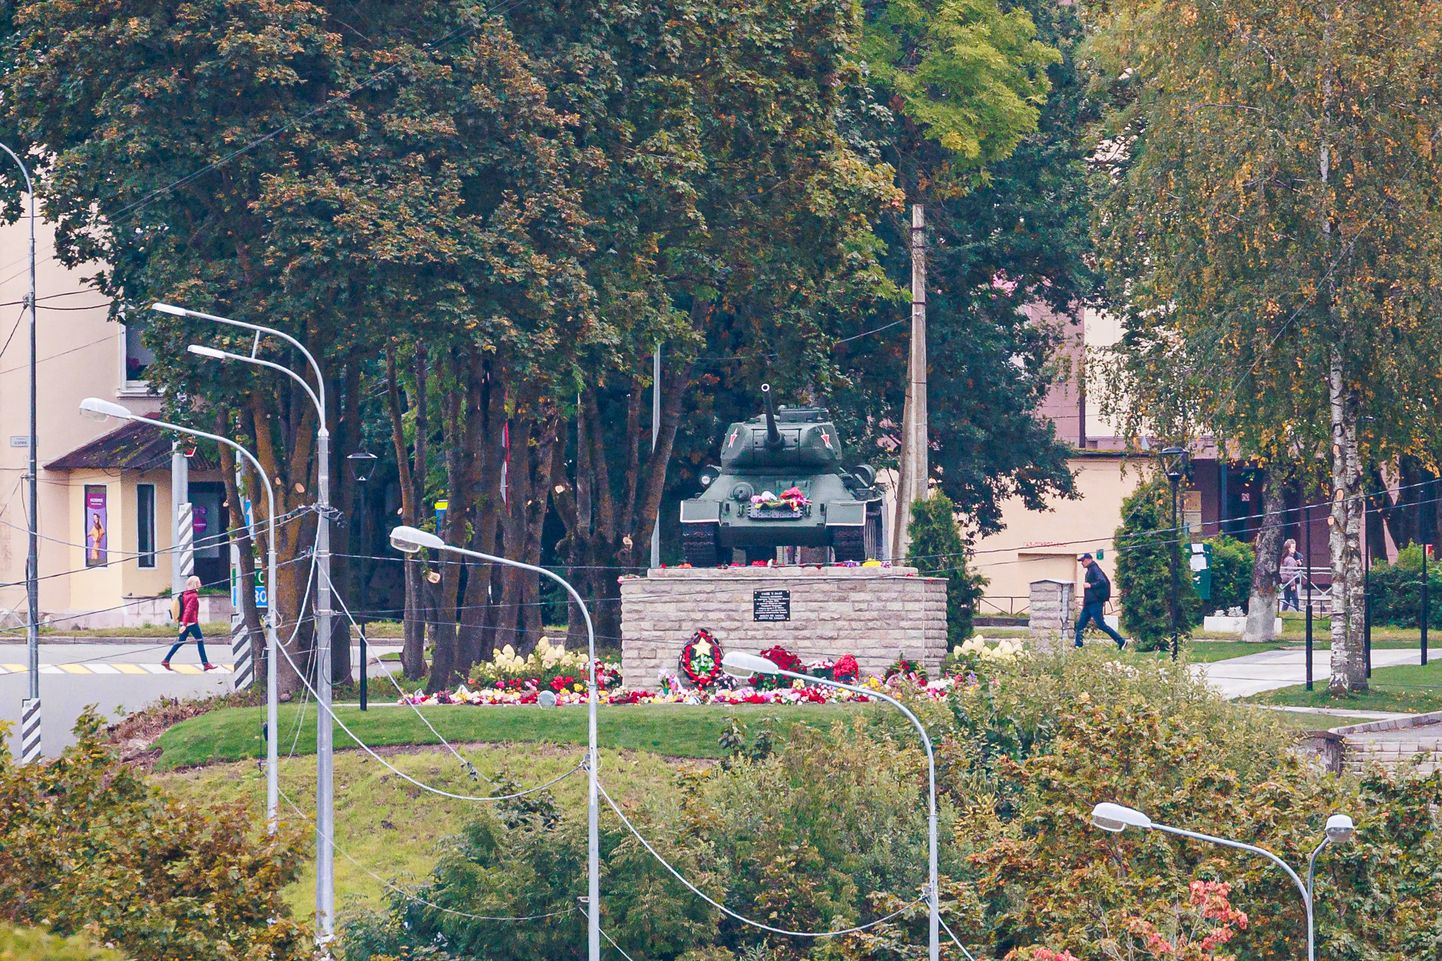 В российском Ивангороде 11 сентября торжественно открыли памятник-танк "Т-34", появившийся в ответ на демонтаж в Нарве аналогичного мемориала как символа государства-агрессора. Жизнь в городе после объявления мобилизации протекает спокойно. Пока.